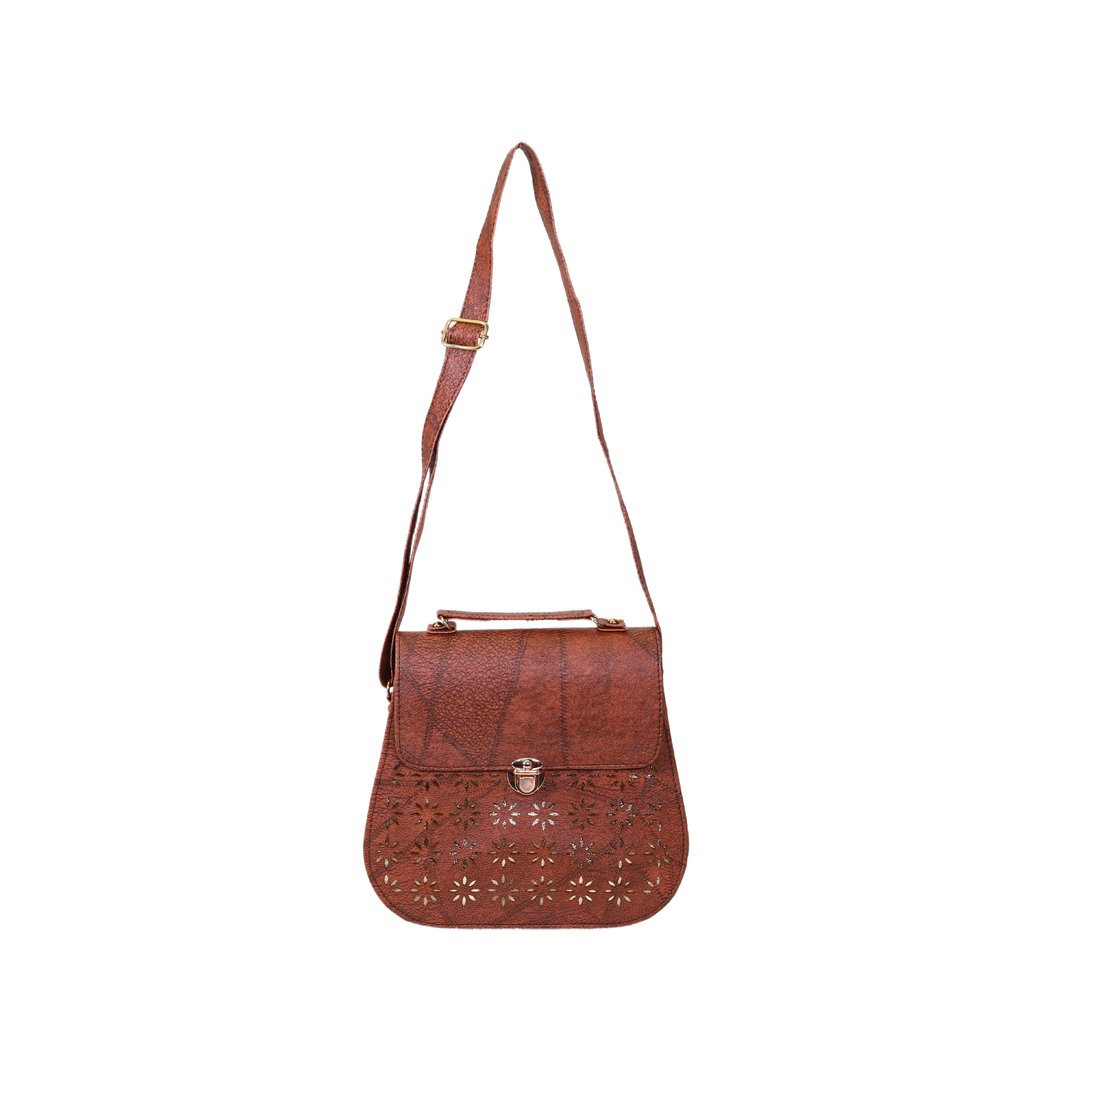 Loveleen Stylish Trendy Sling Bags for Women/Girls(Brown)